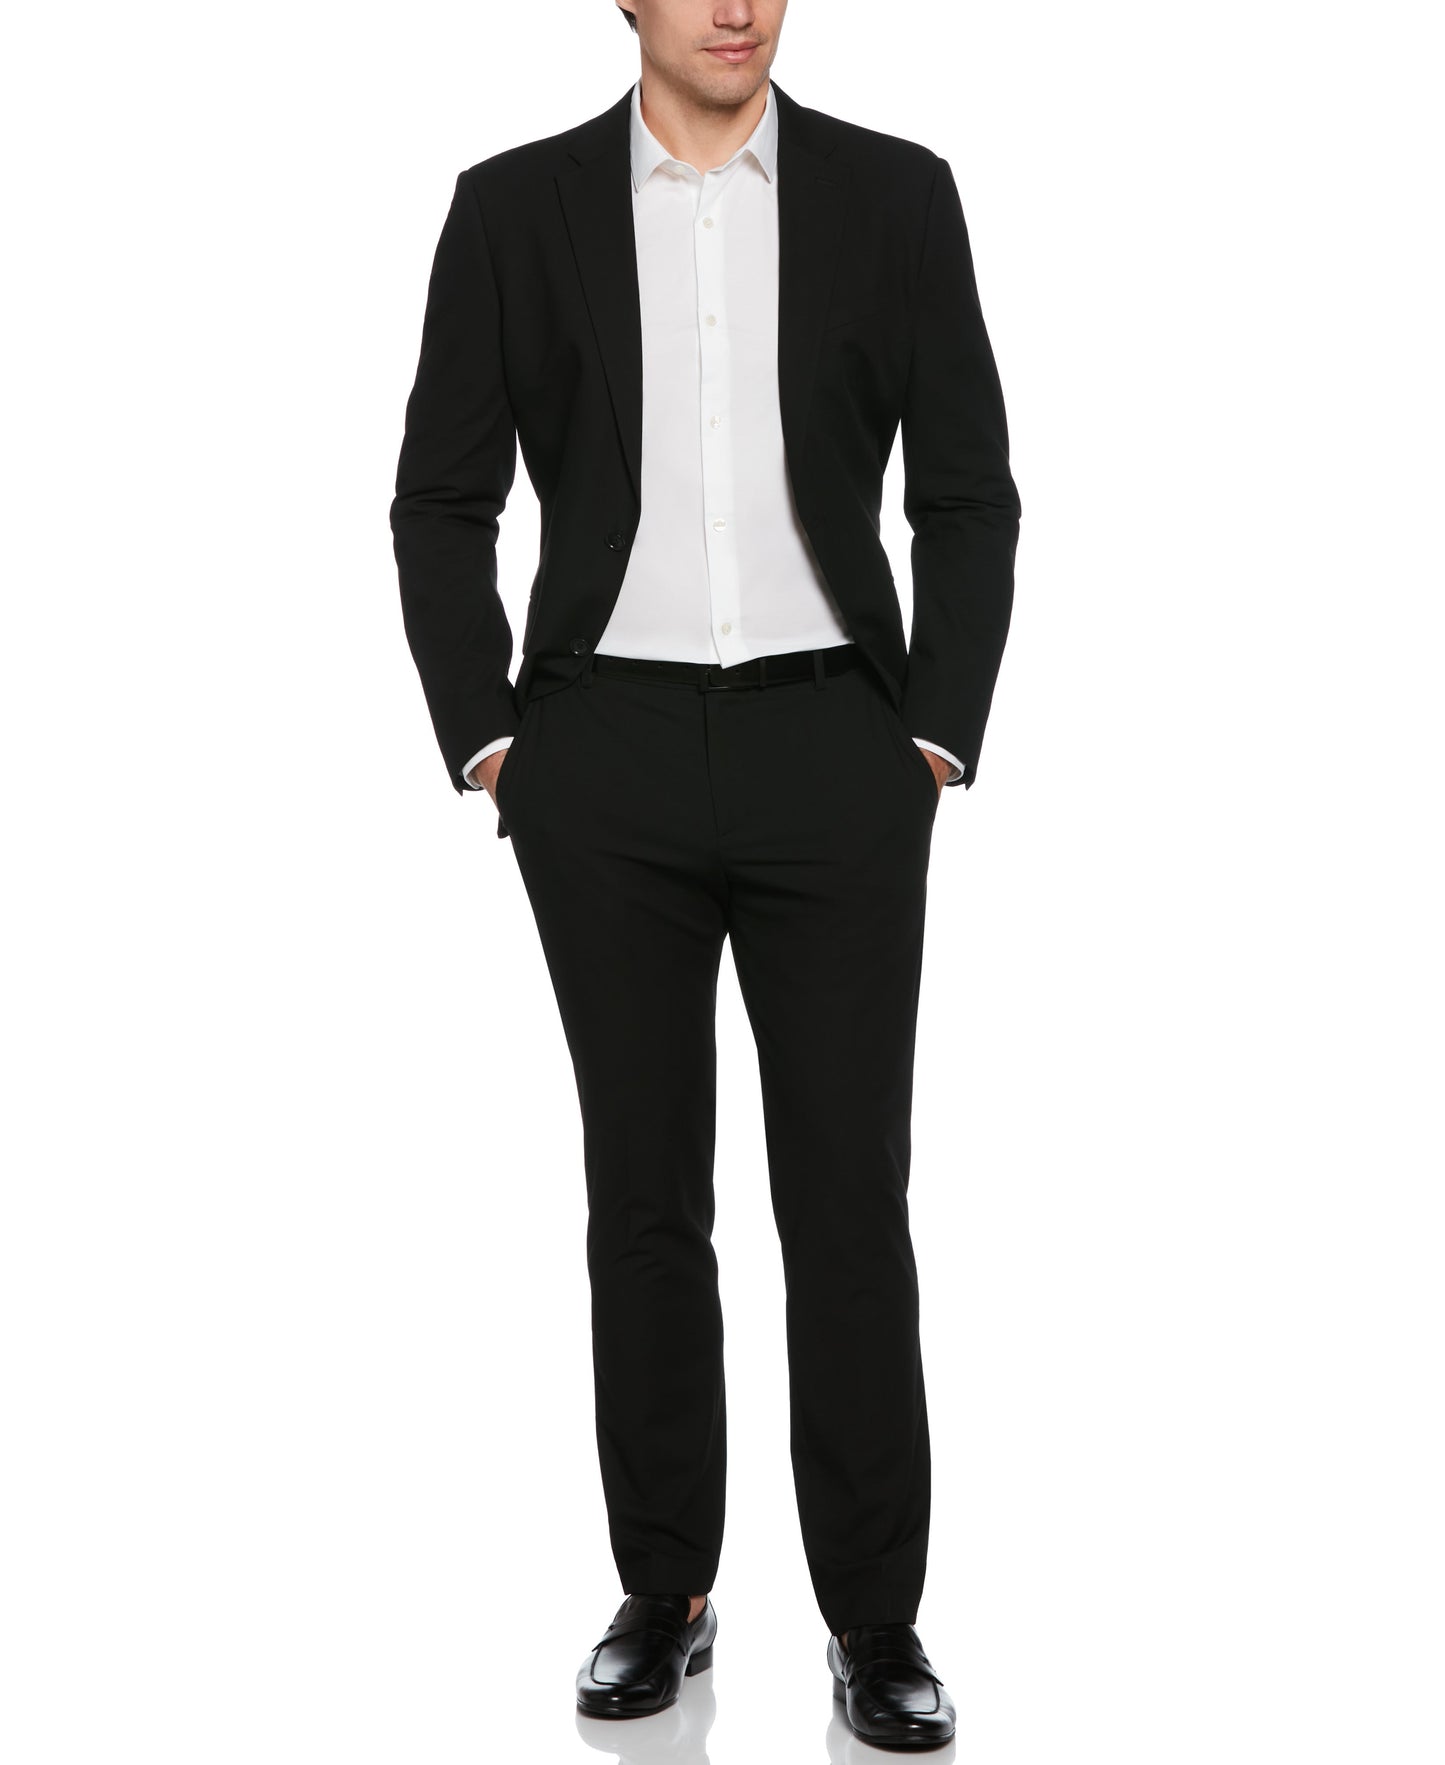 Slim Fit Black Louis Suit